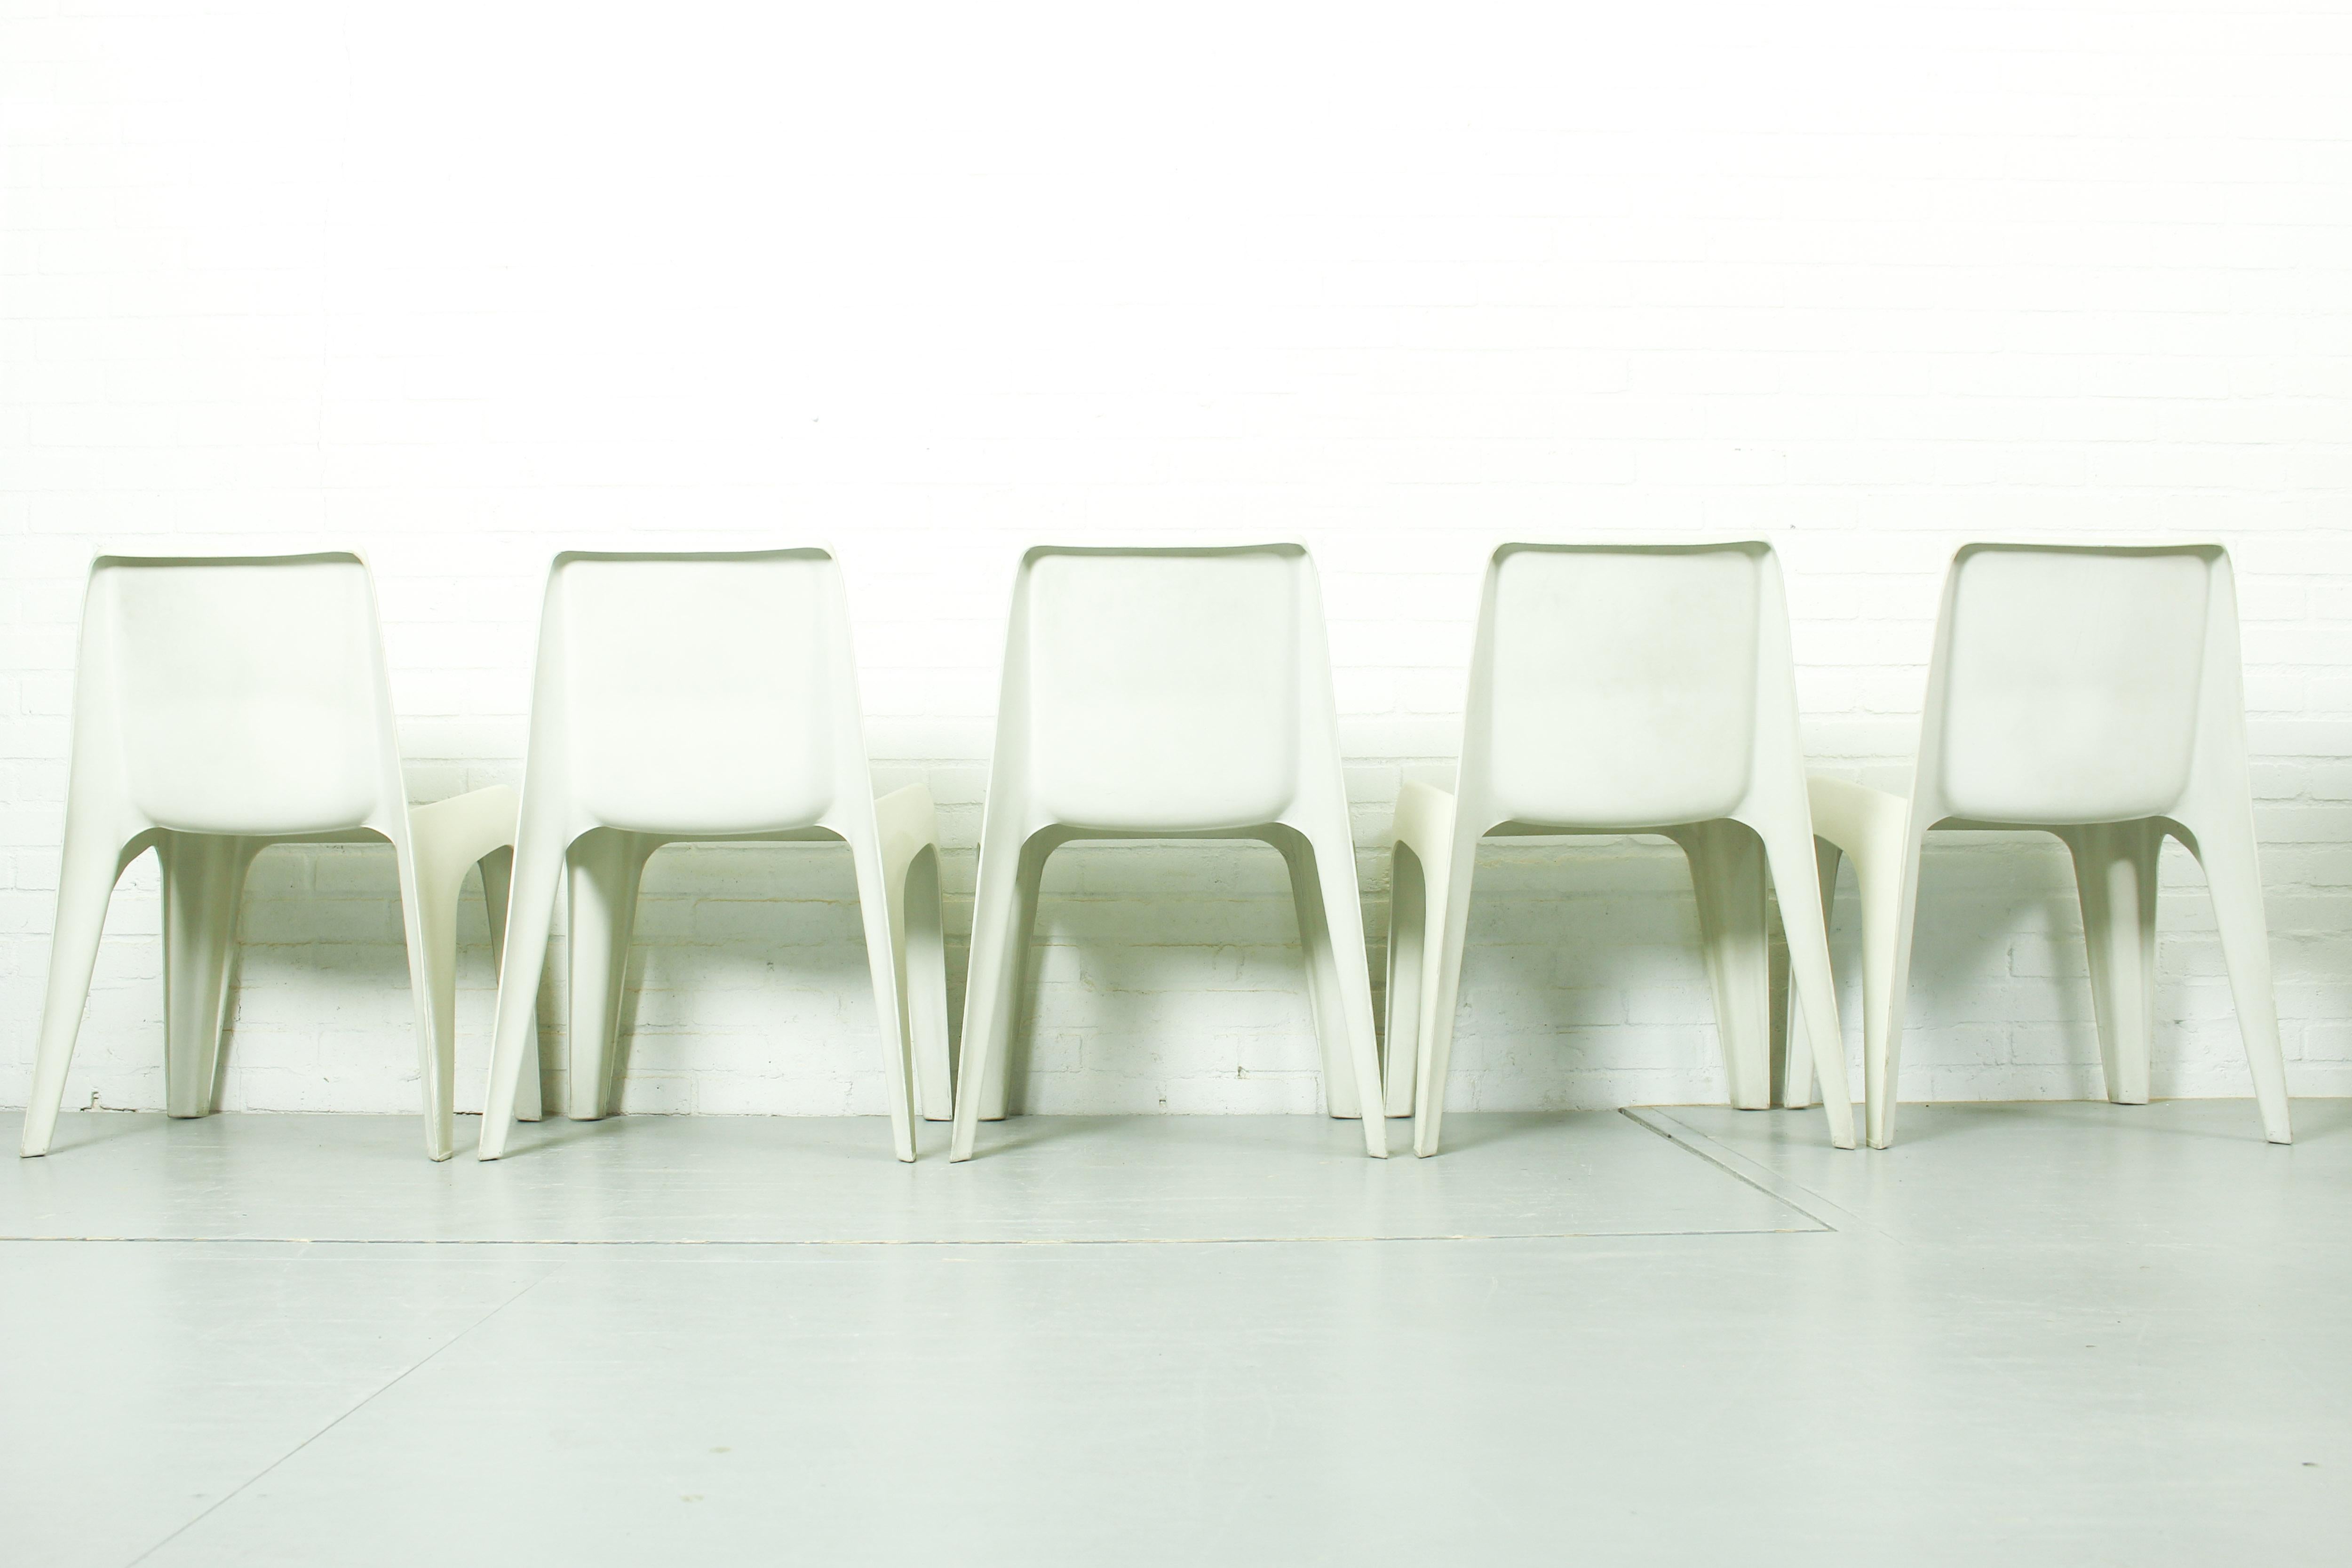 Set of 5 chairs model no BA 1171 designed by Helmut Bätzner for Bofinger, German For Sale 1